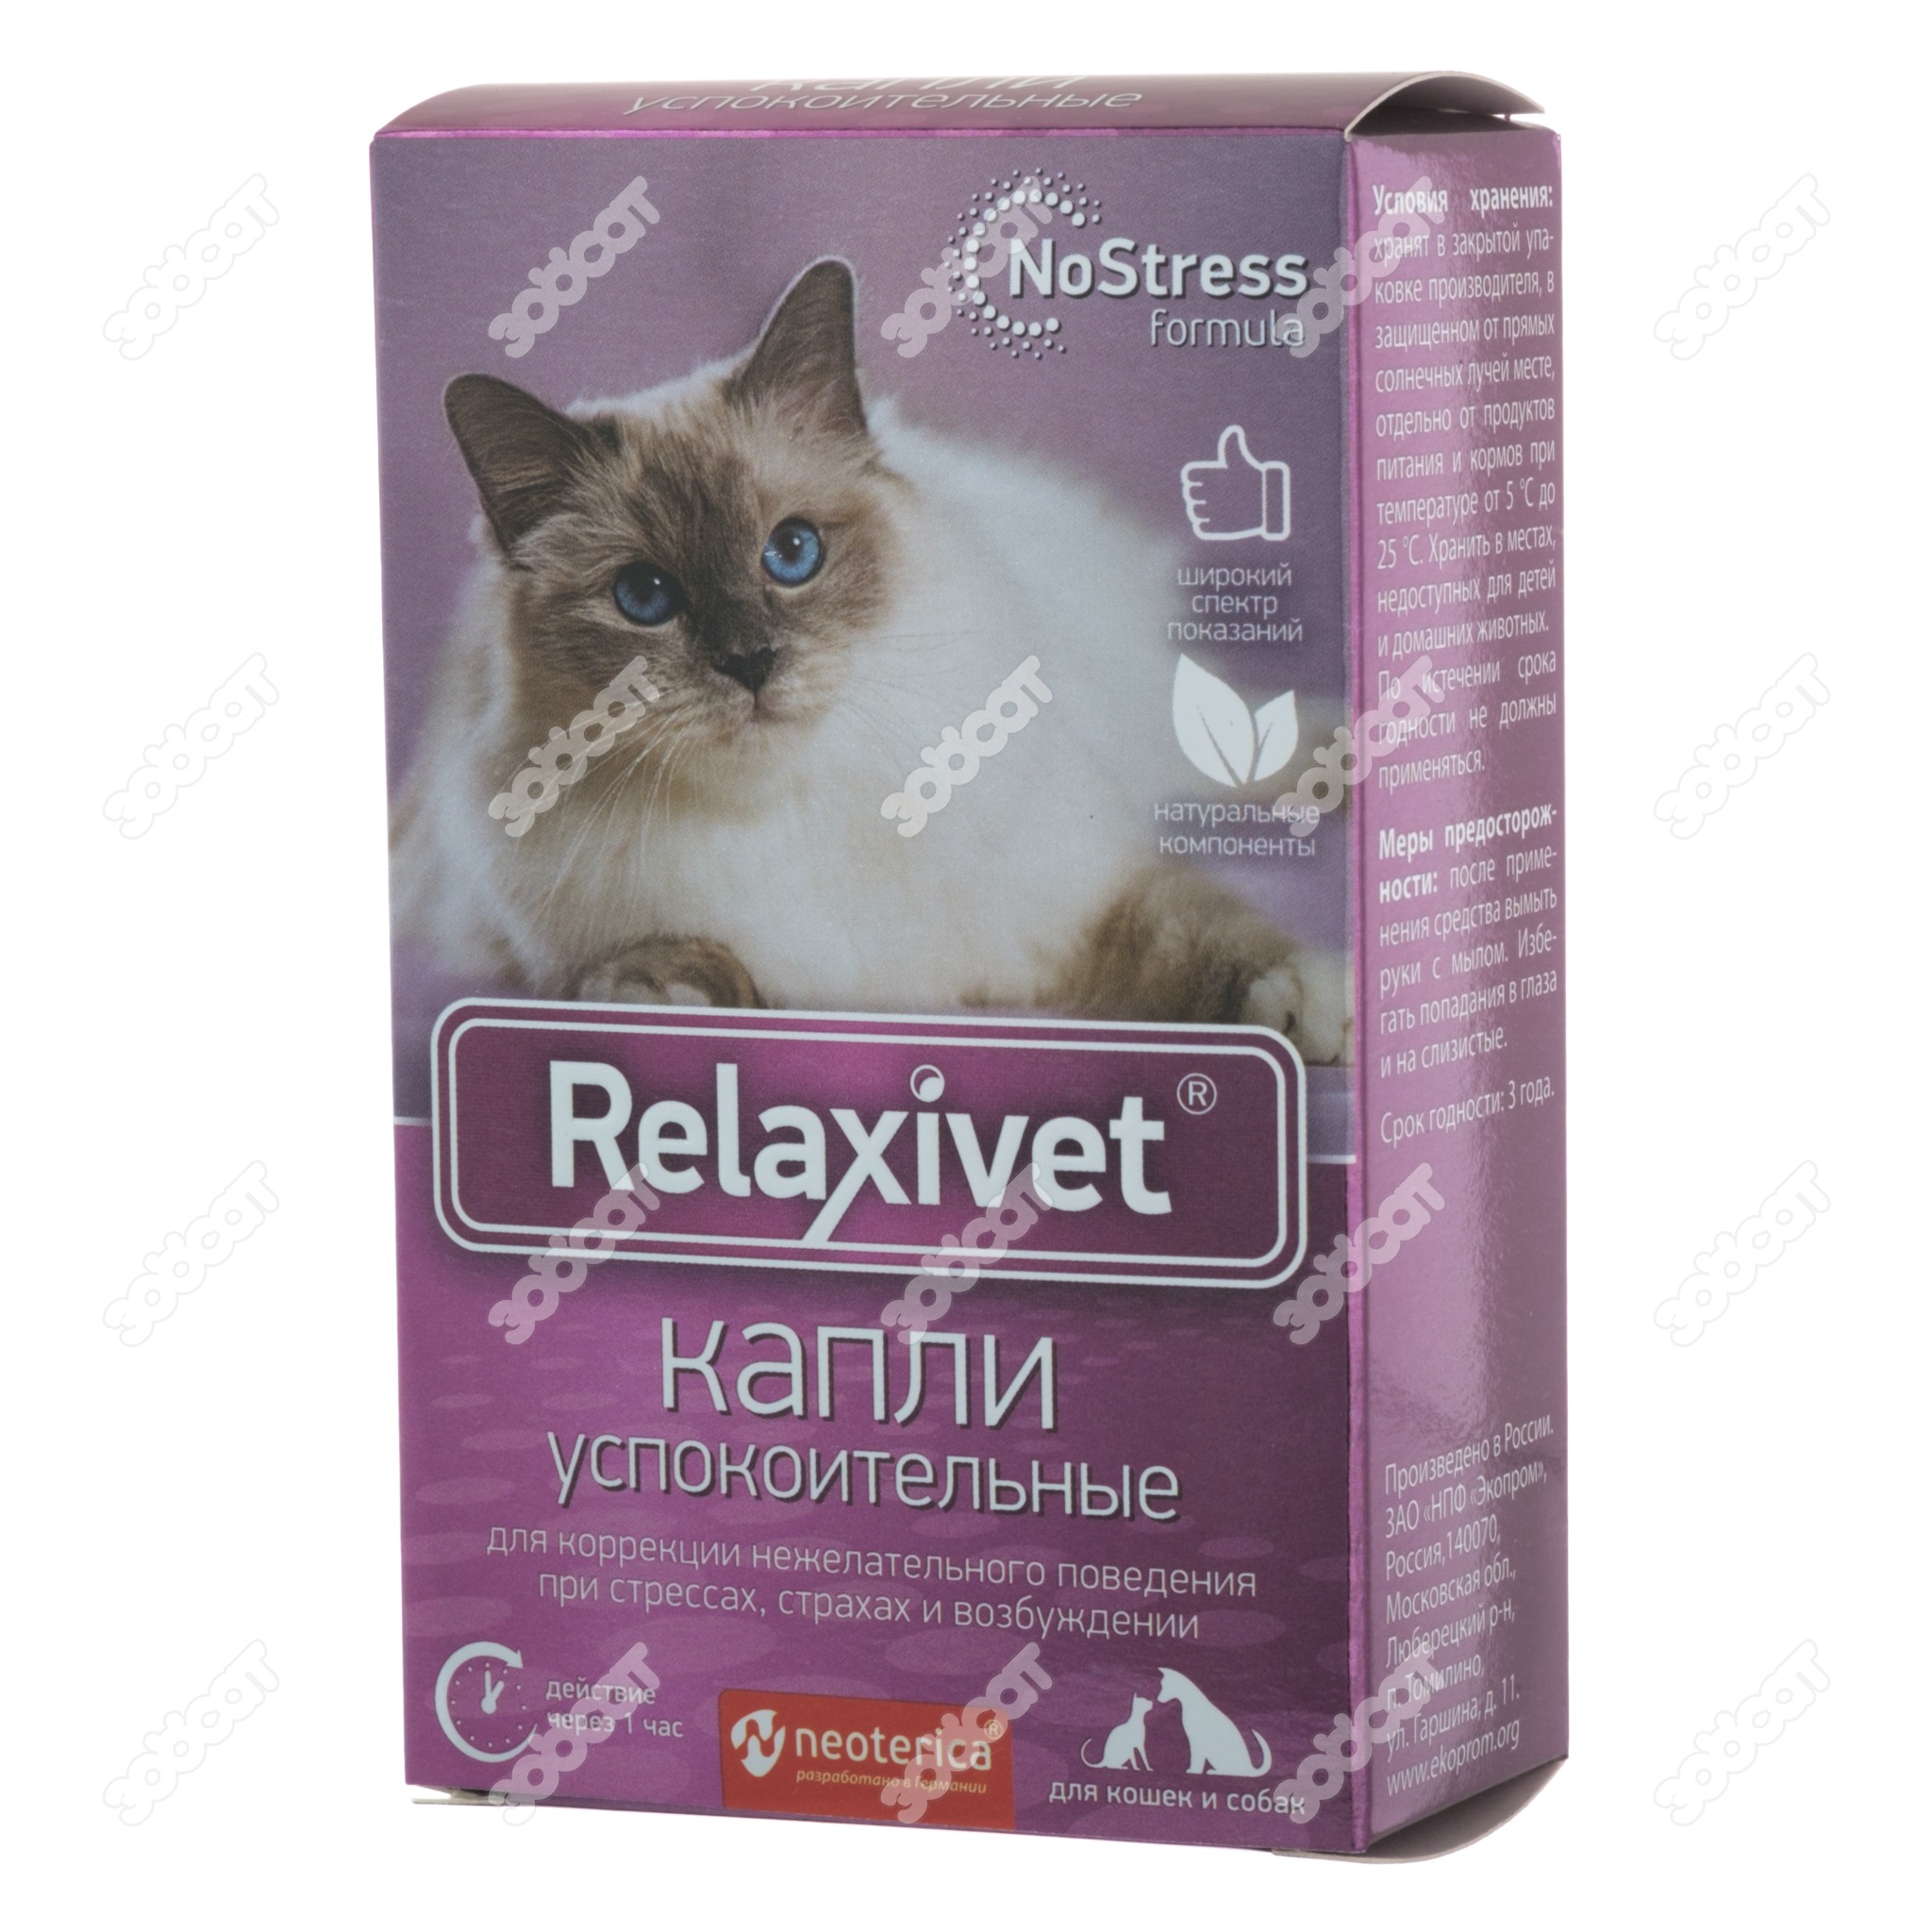 Успокаивающие препараты для кошек